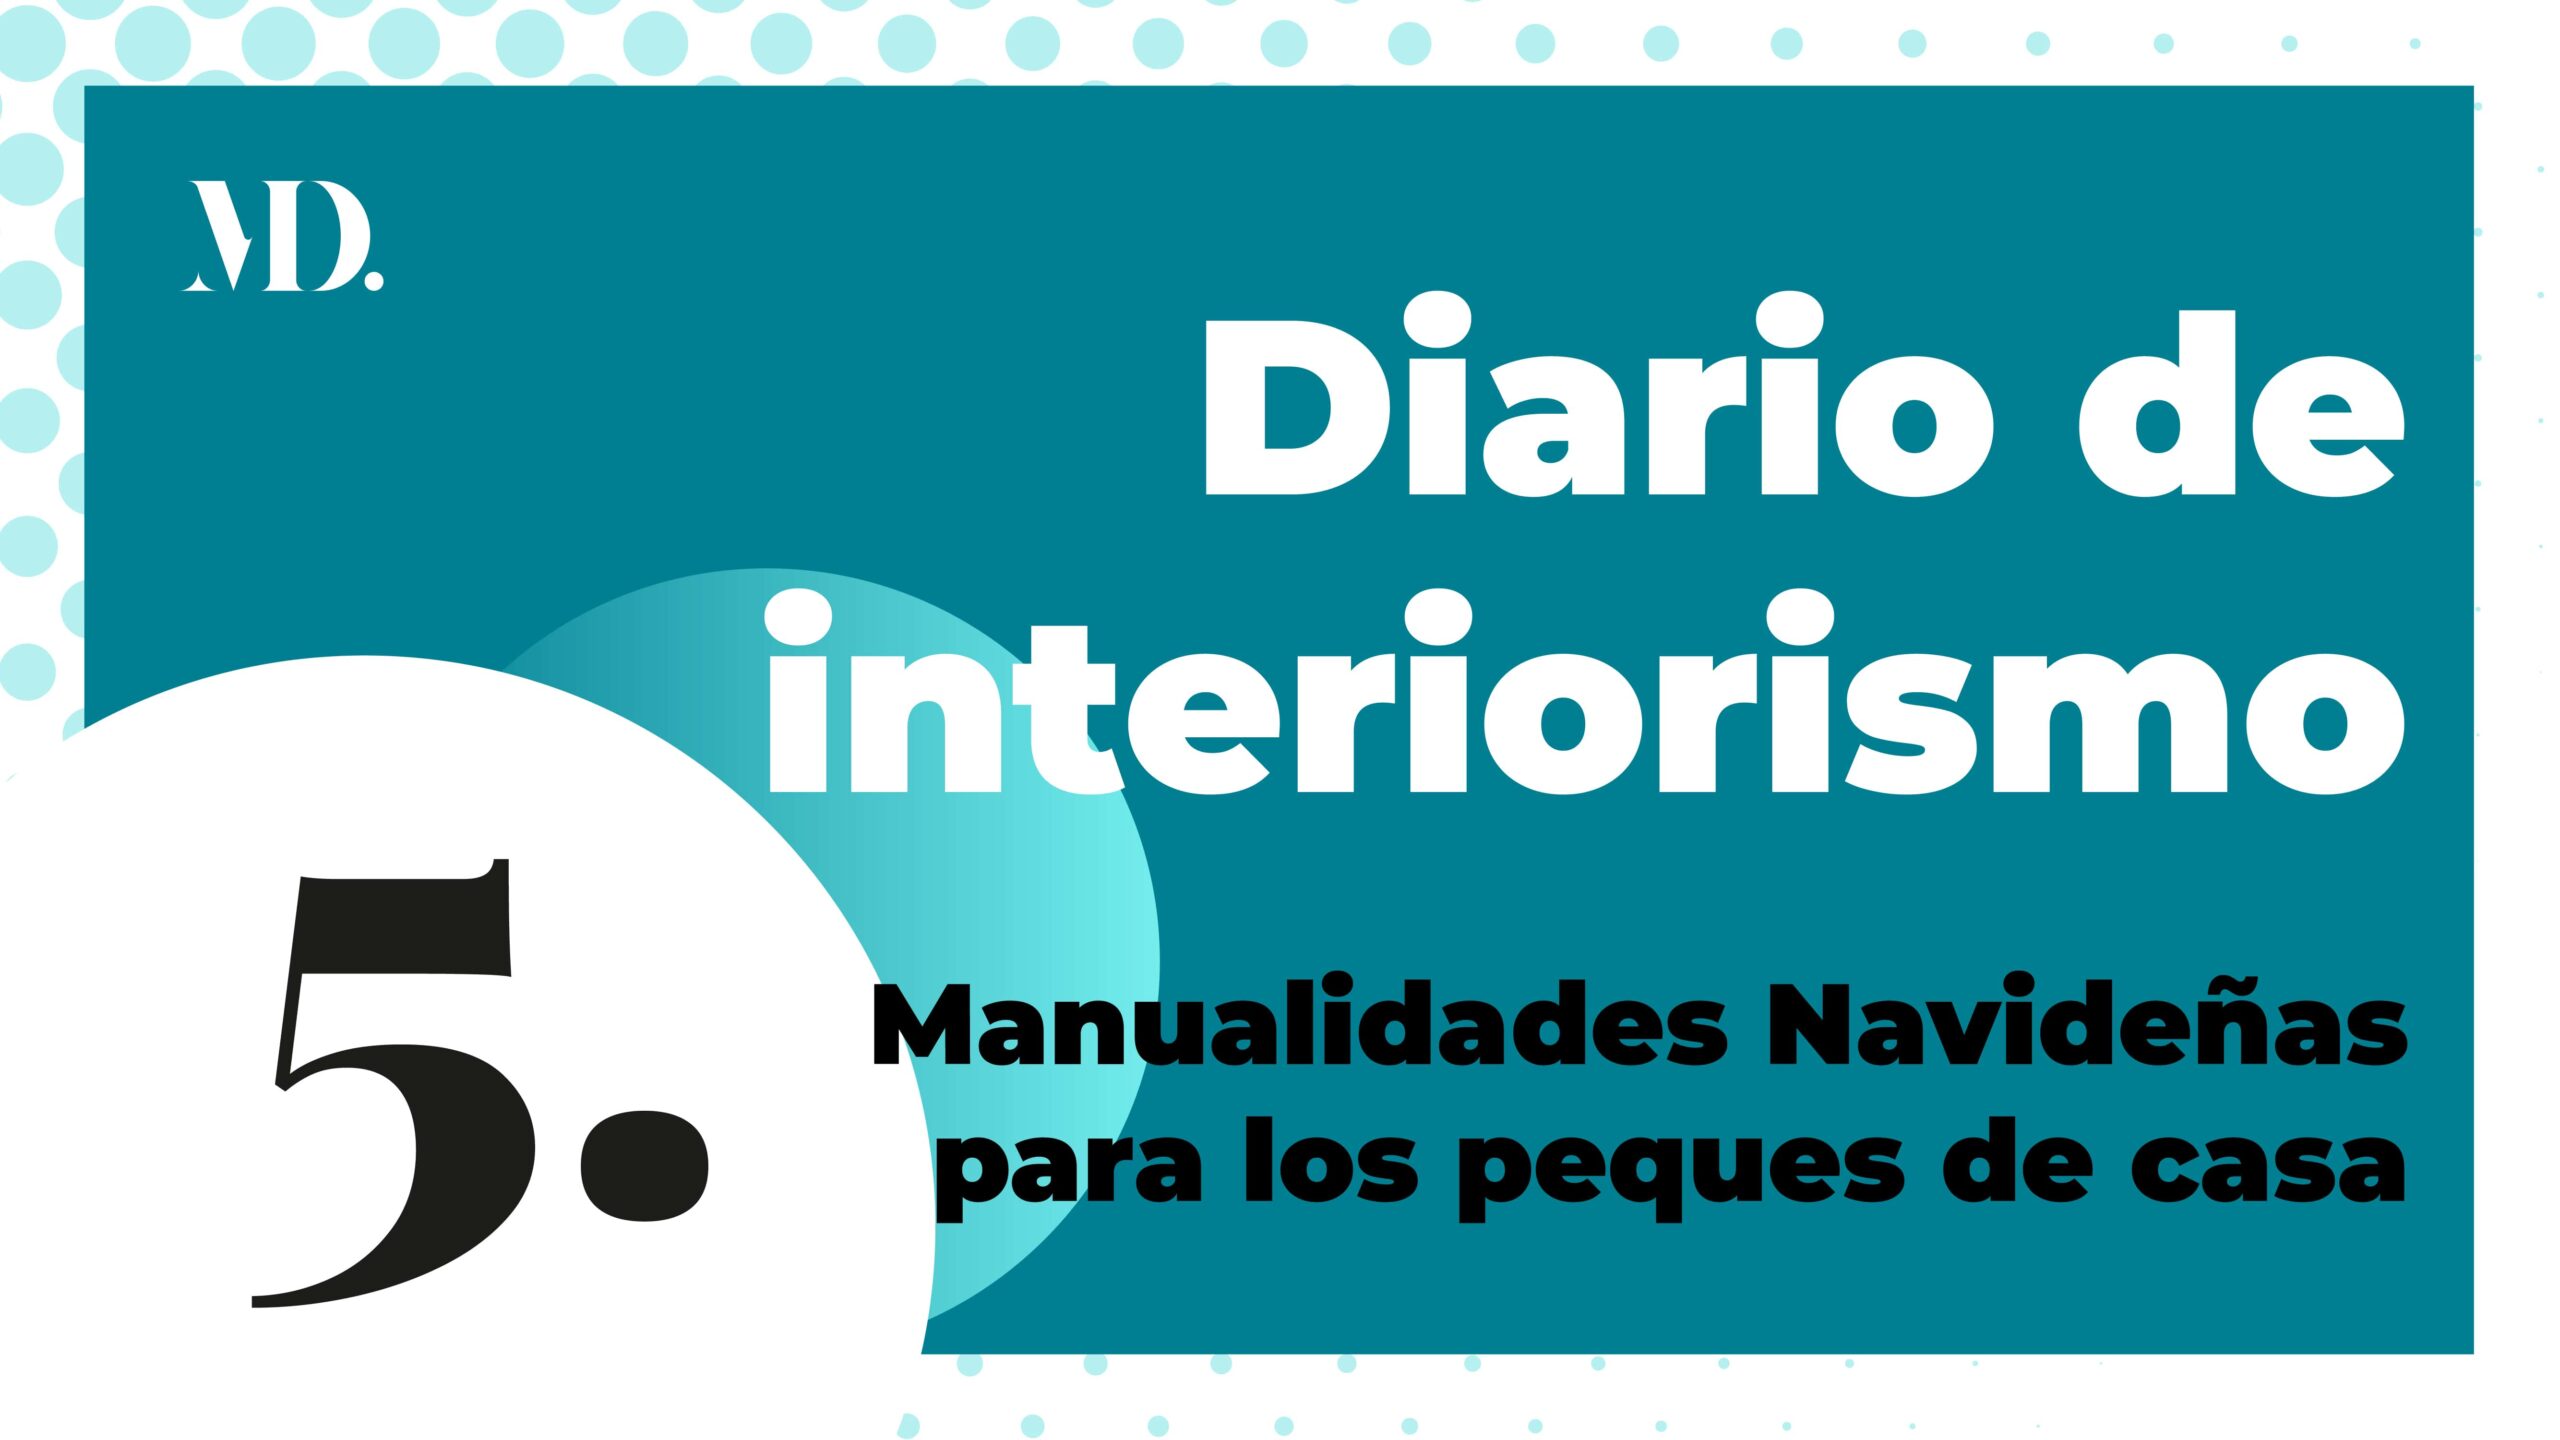 Cabecera y enlace Diario de interiorismo, programa Manualidades navideñas para los peques de la casa